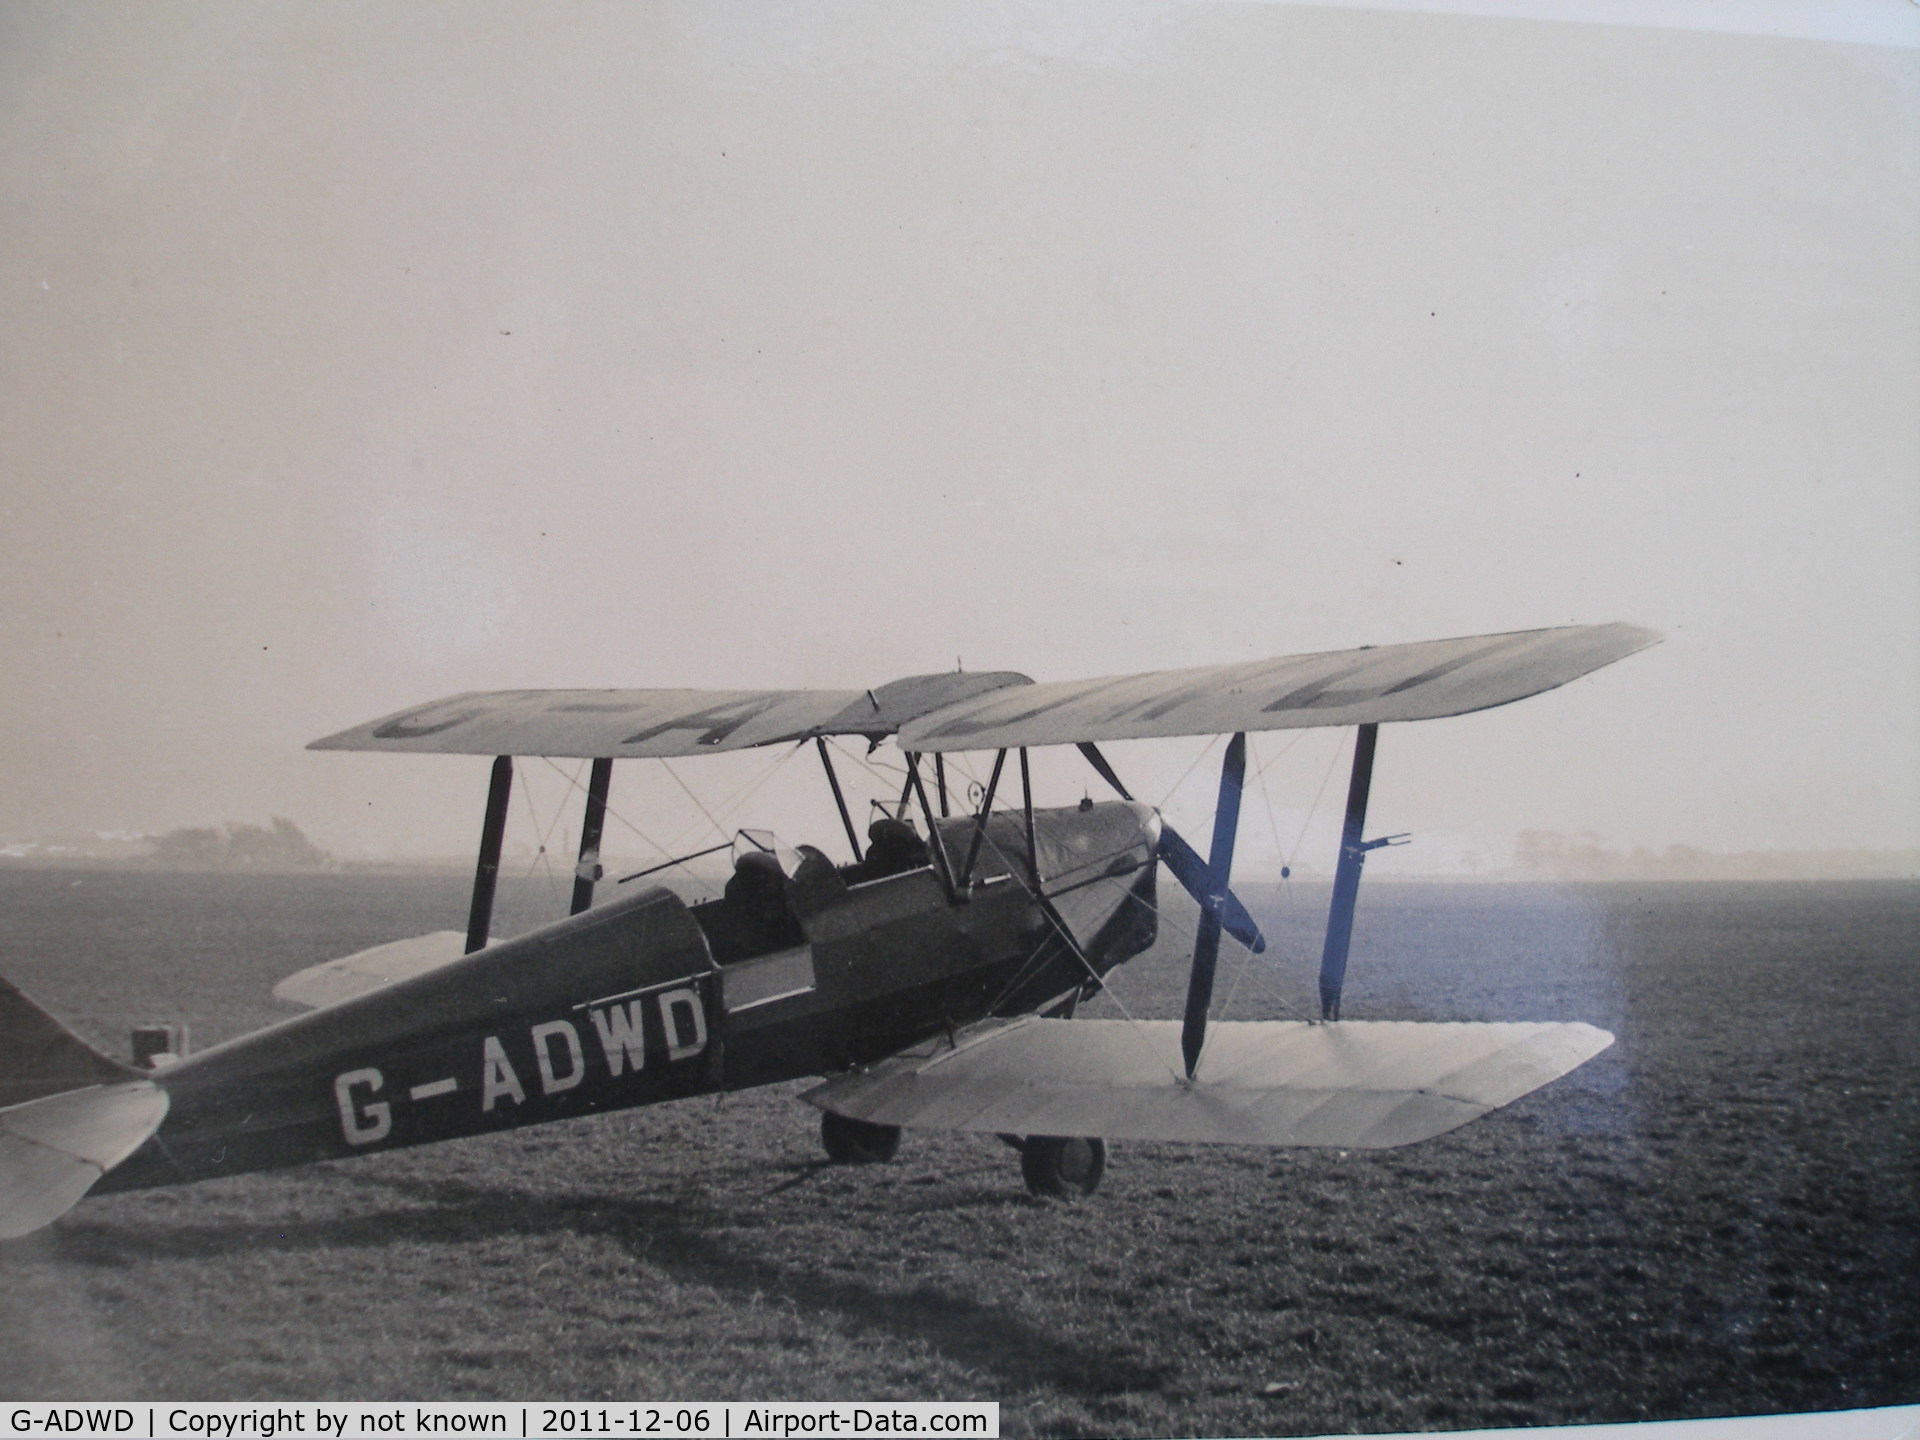 G-ADWD, De Havilland DH-82A Tiger Moth II C/N 3447, Jimmy Hale (RAF) first solo flight 23-8-1937 at
Prestwick flying school